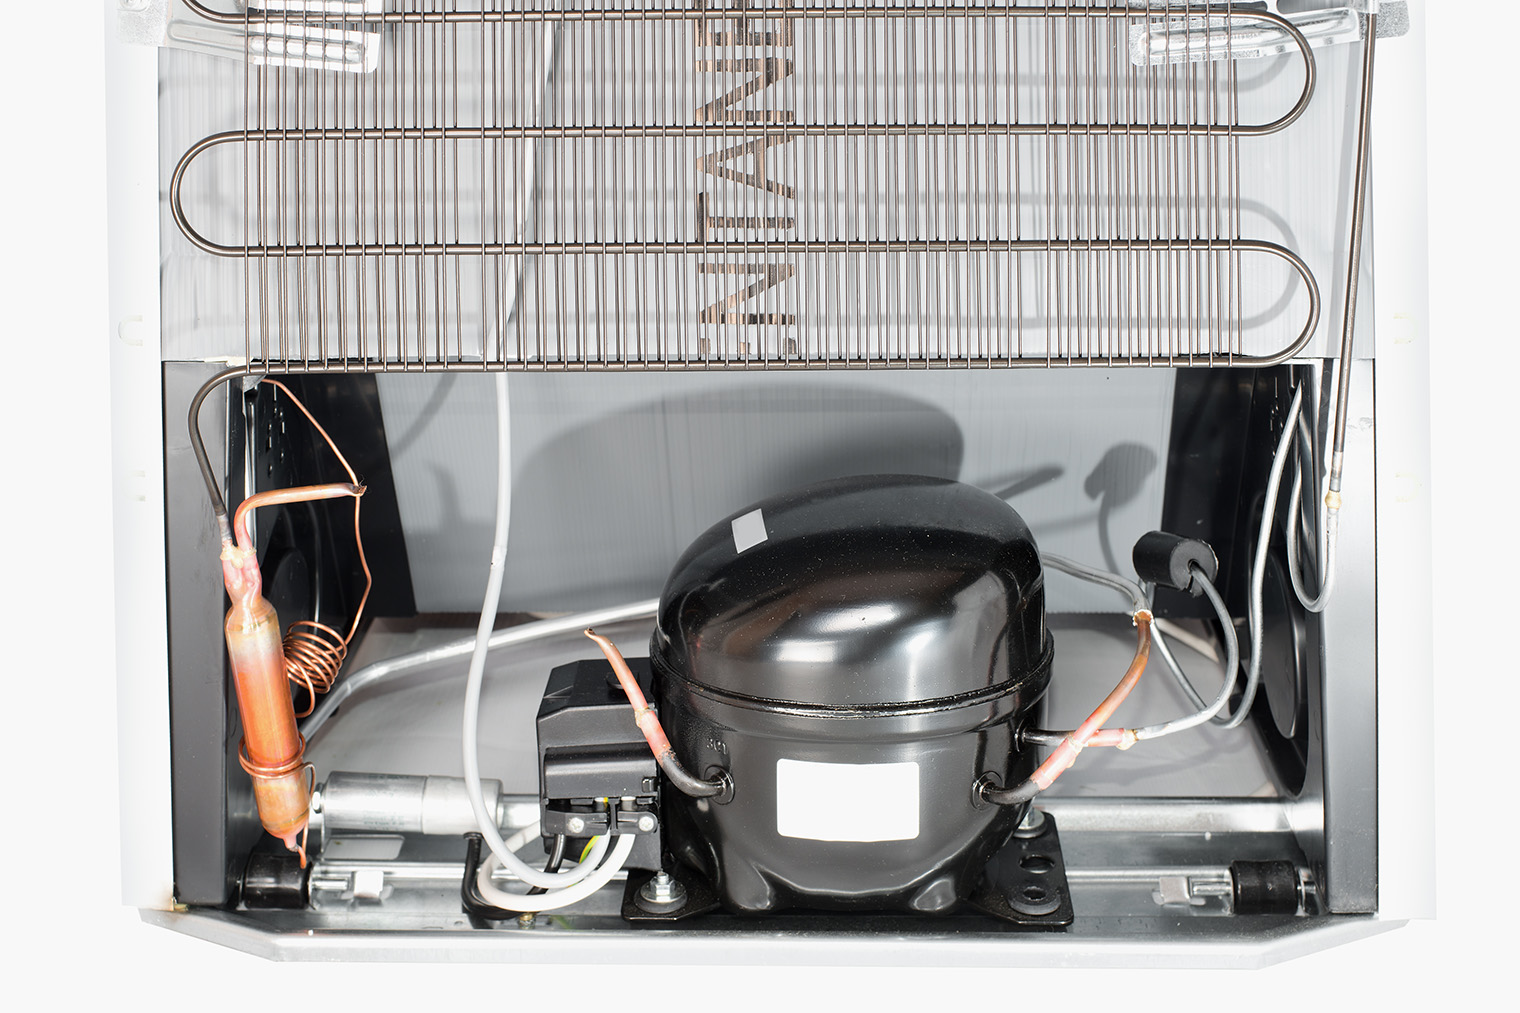 Компрессор — это черная коробочка с мотором внутри. За все время использования холодильника его можно так ни разу и не увидеть. Источник: yevgeniy11 / Shutterstock